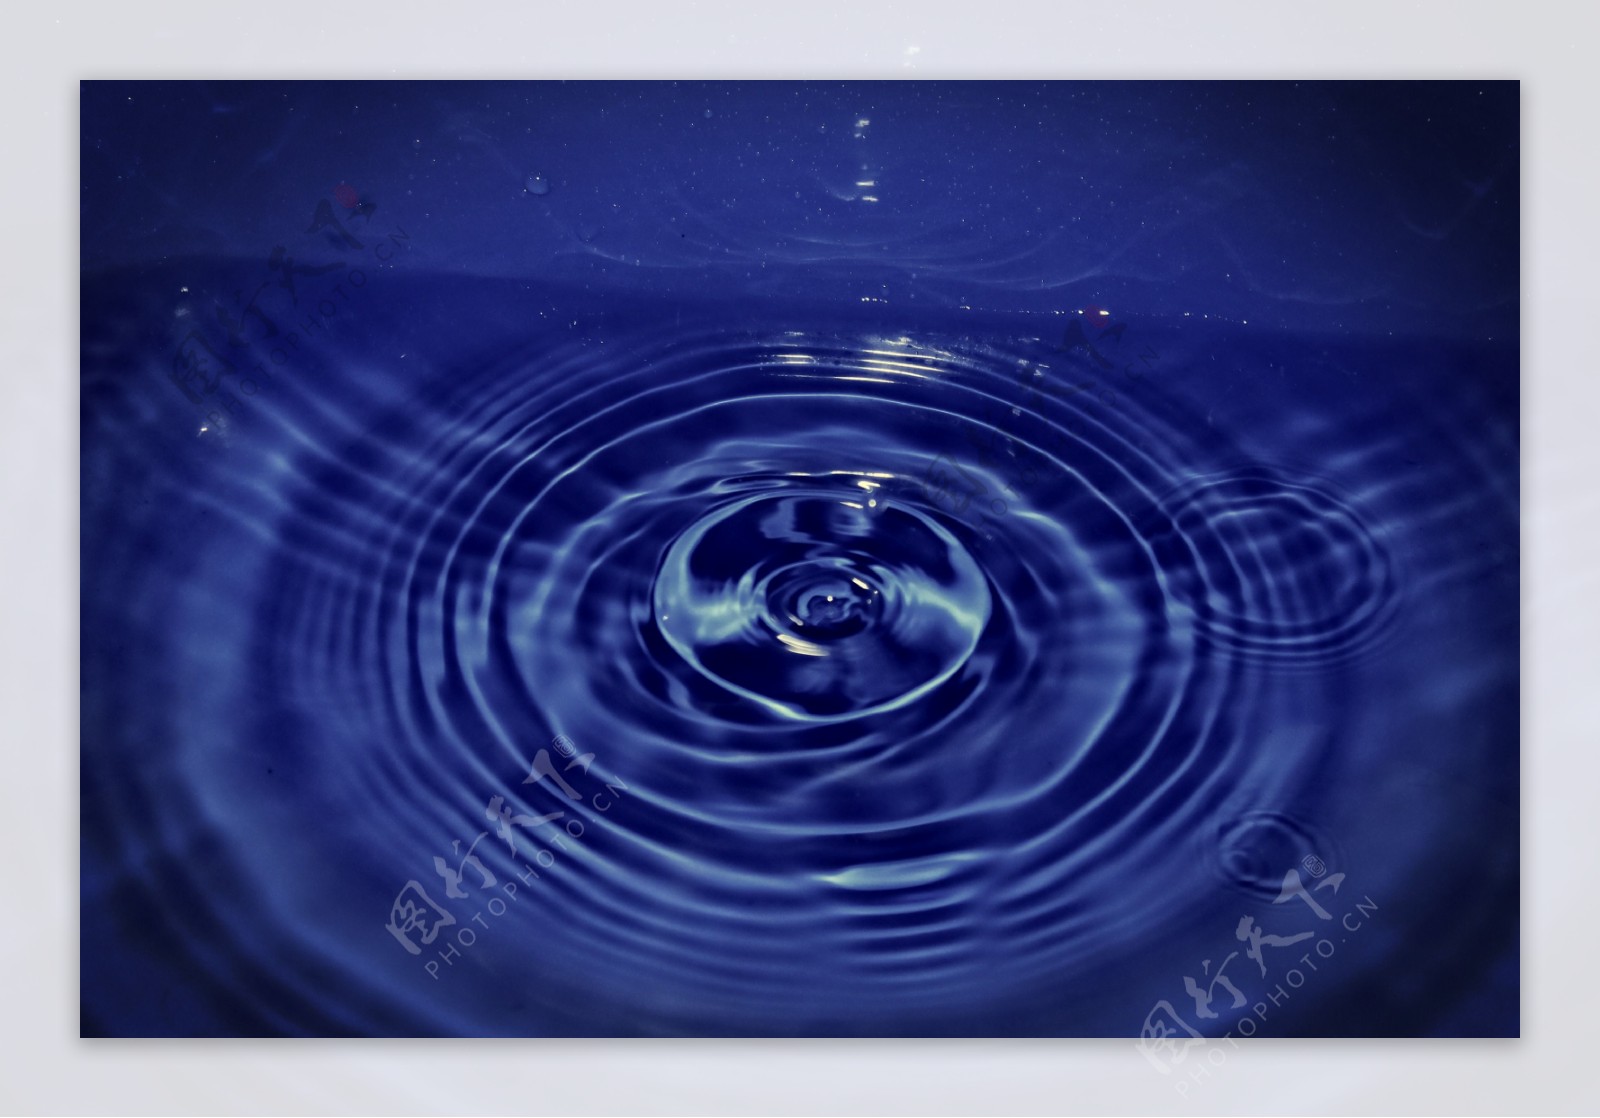 水滴水纹摄影美图